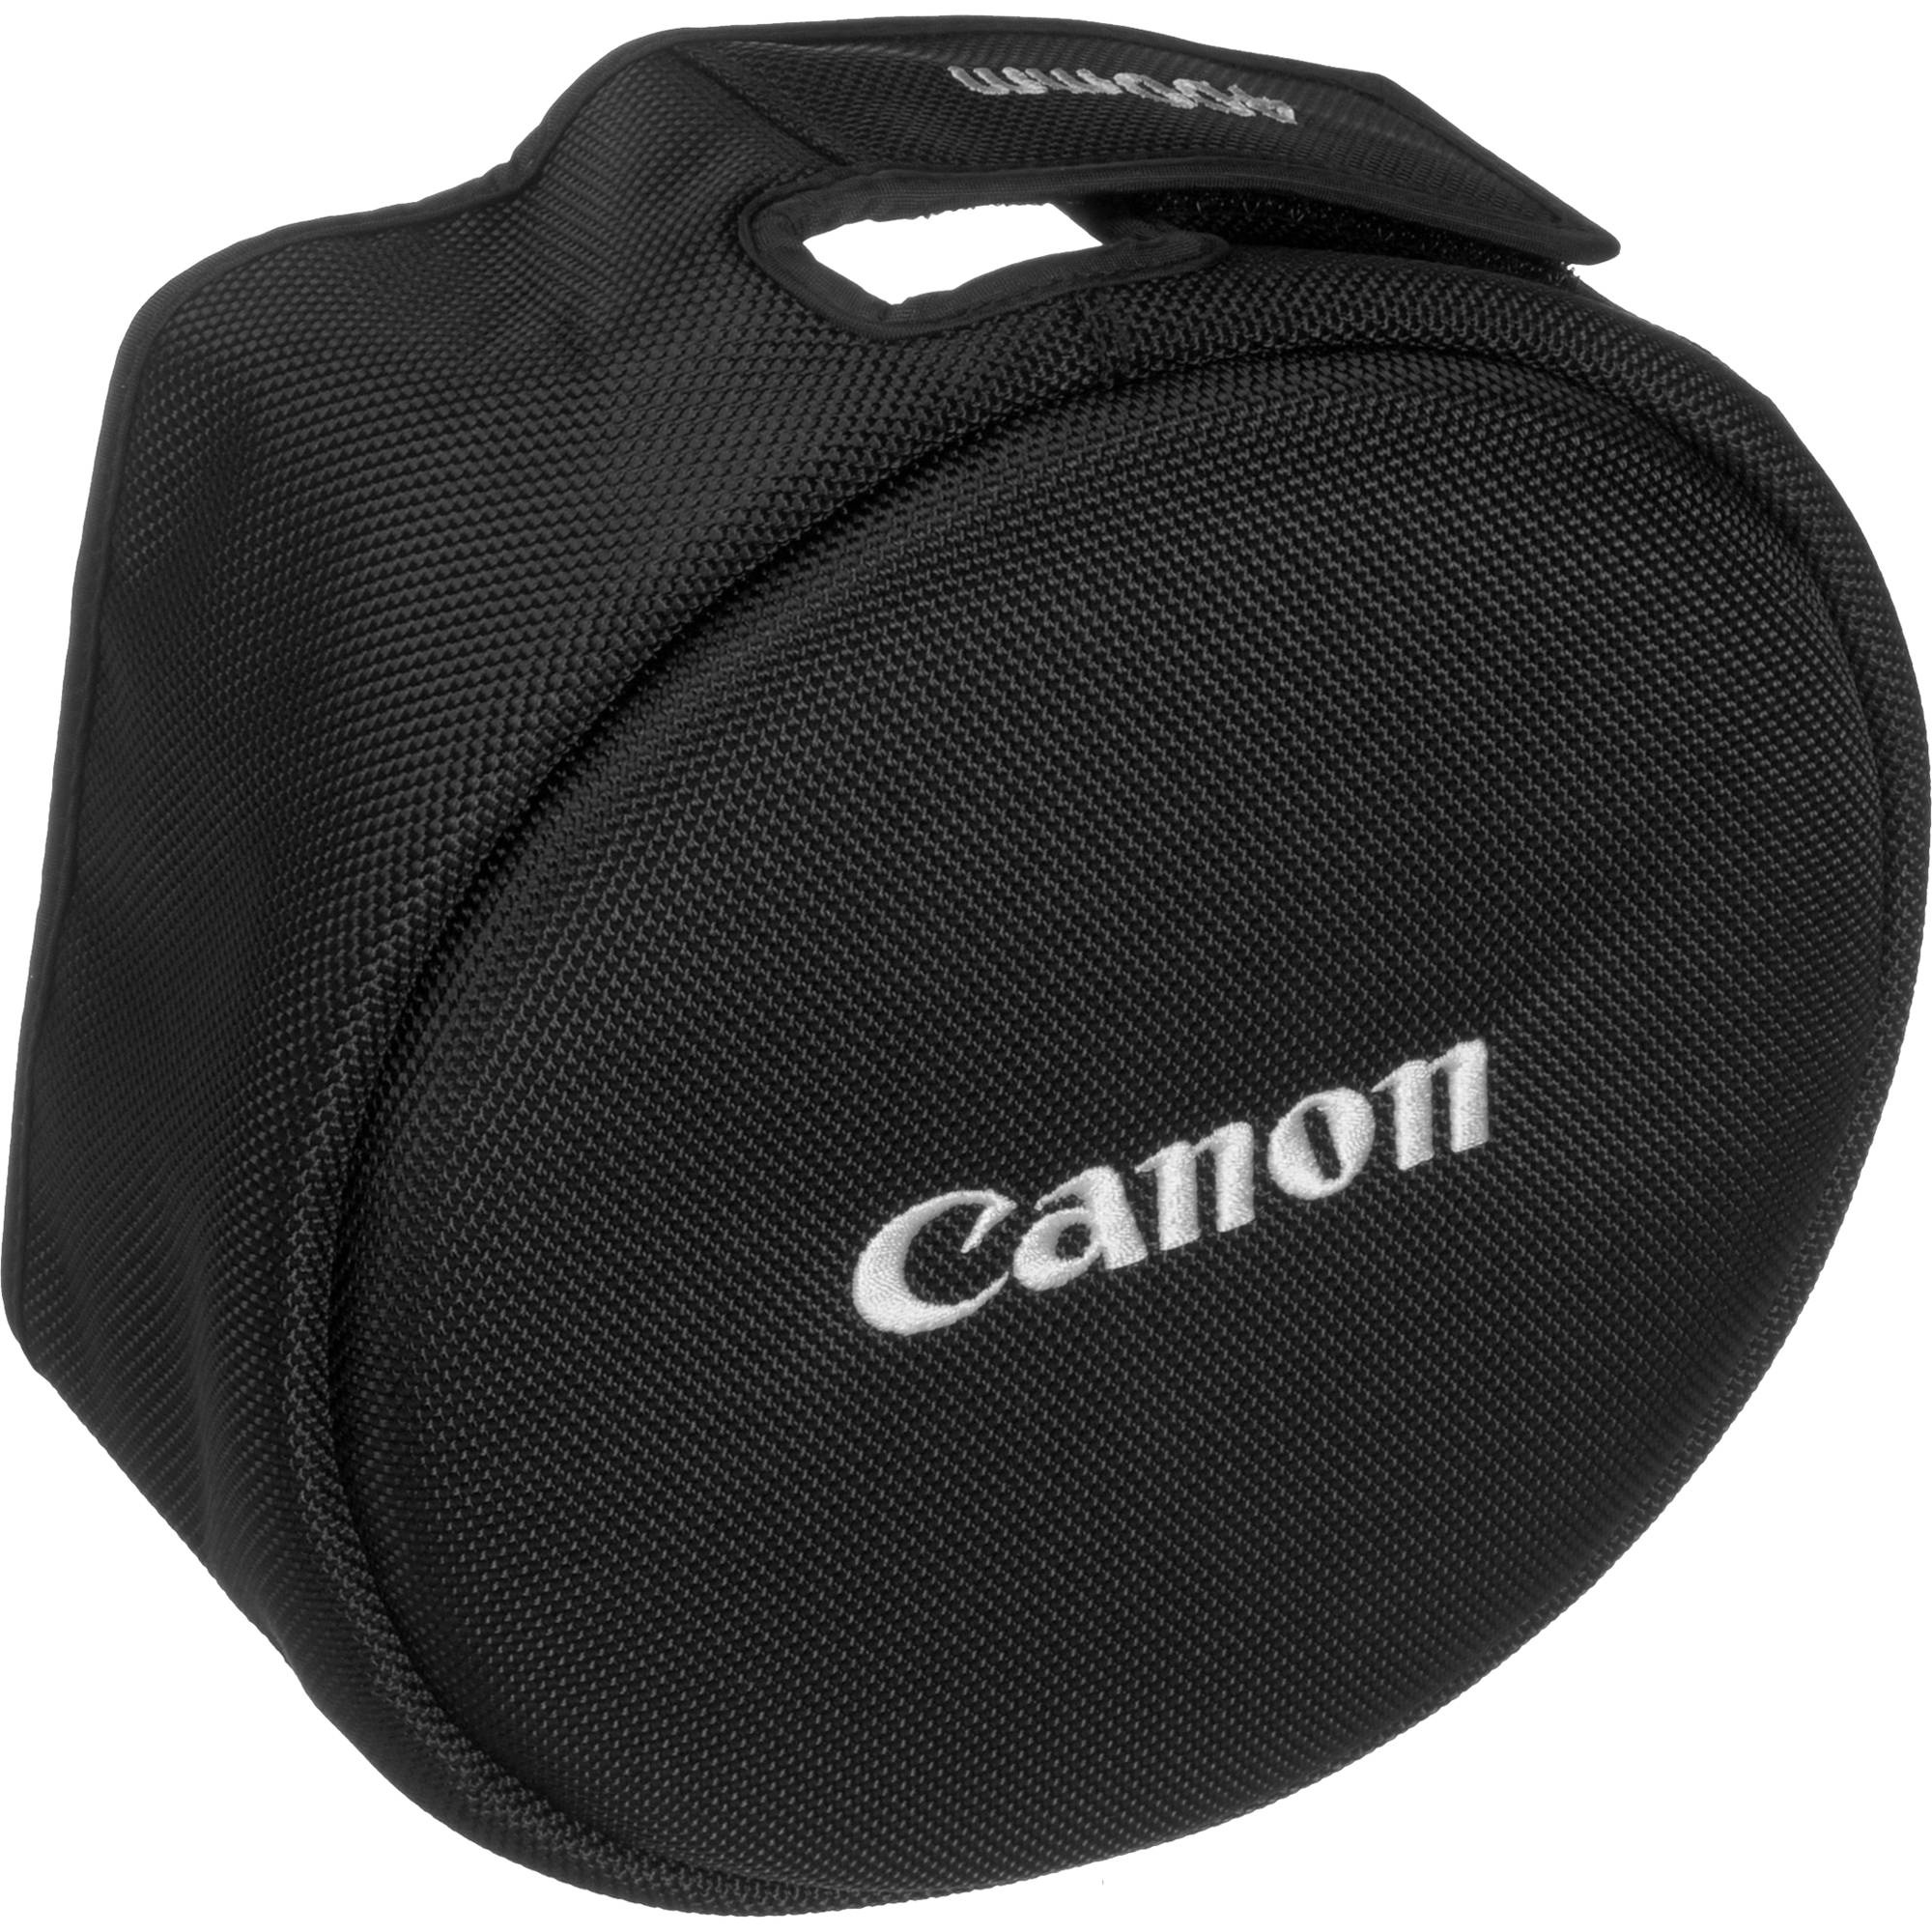 Canon E-180D Lens Cap